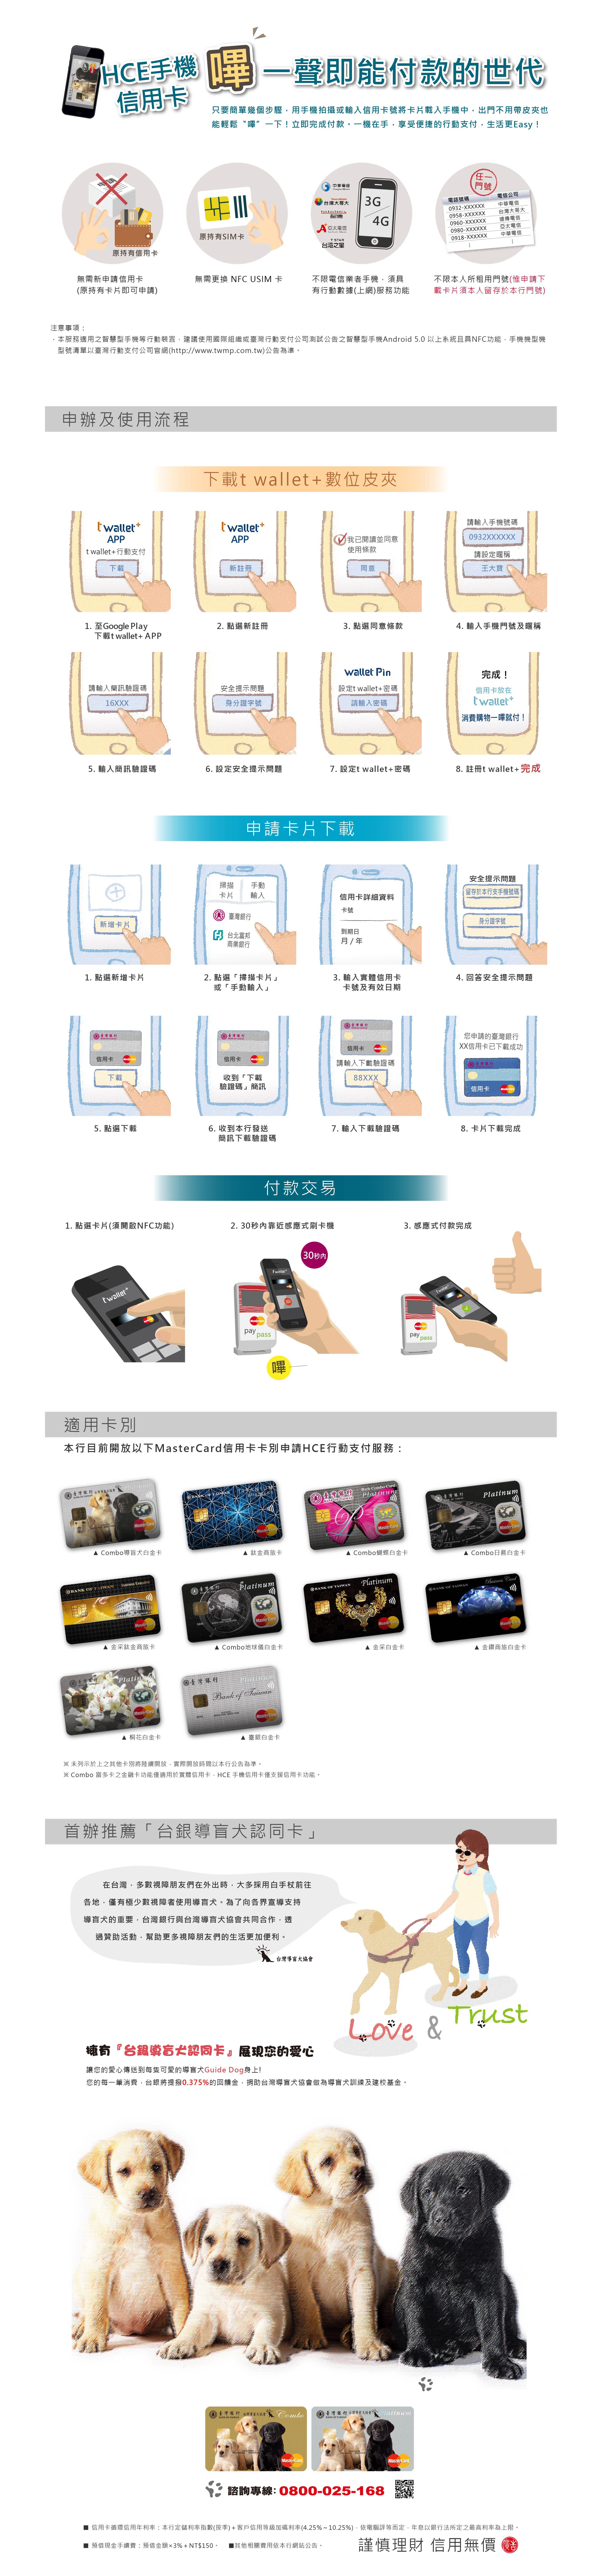 HCE手機信用卡資訊圖像化